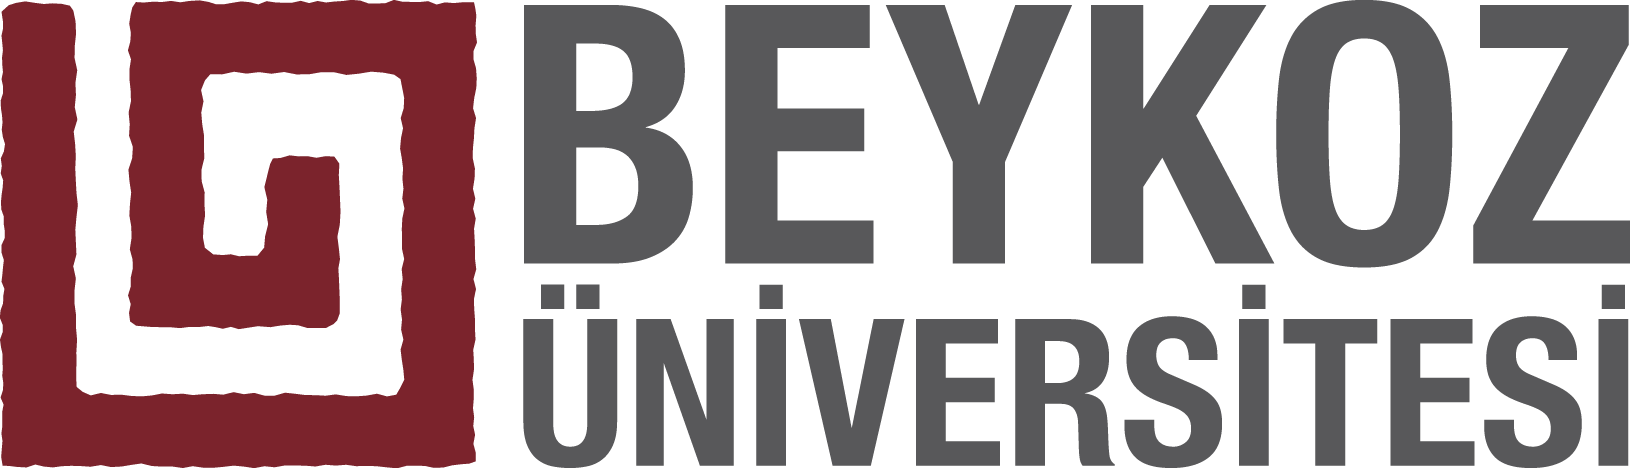 Beykoz Üniversitesi | Beykoz University